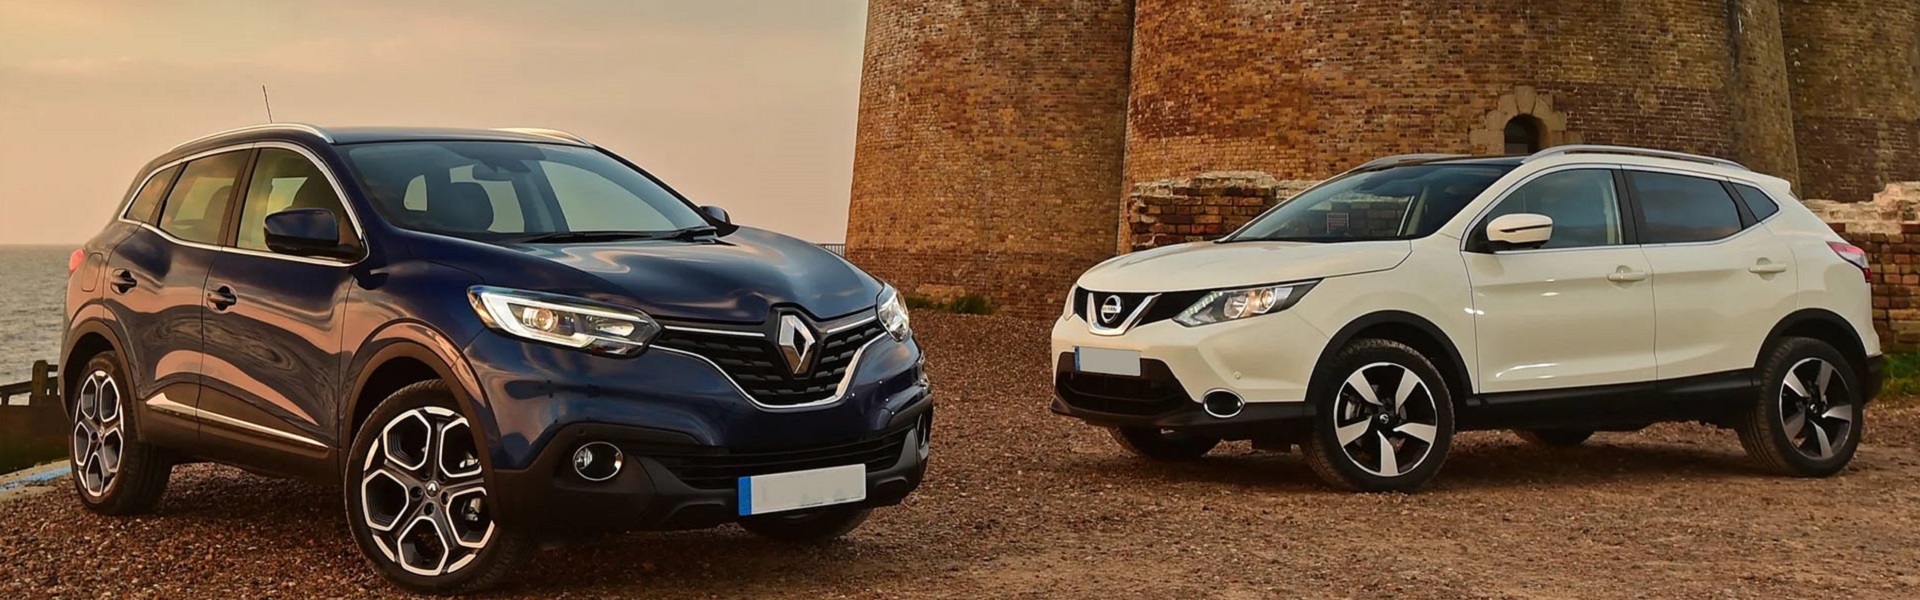 Sprej za grlo | Prodaja Renault, Dacia i Nissan vozila